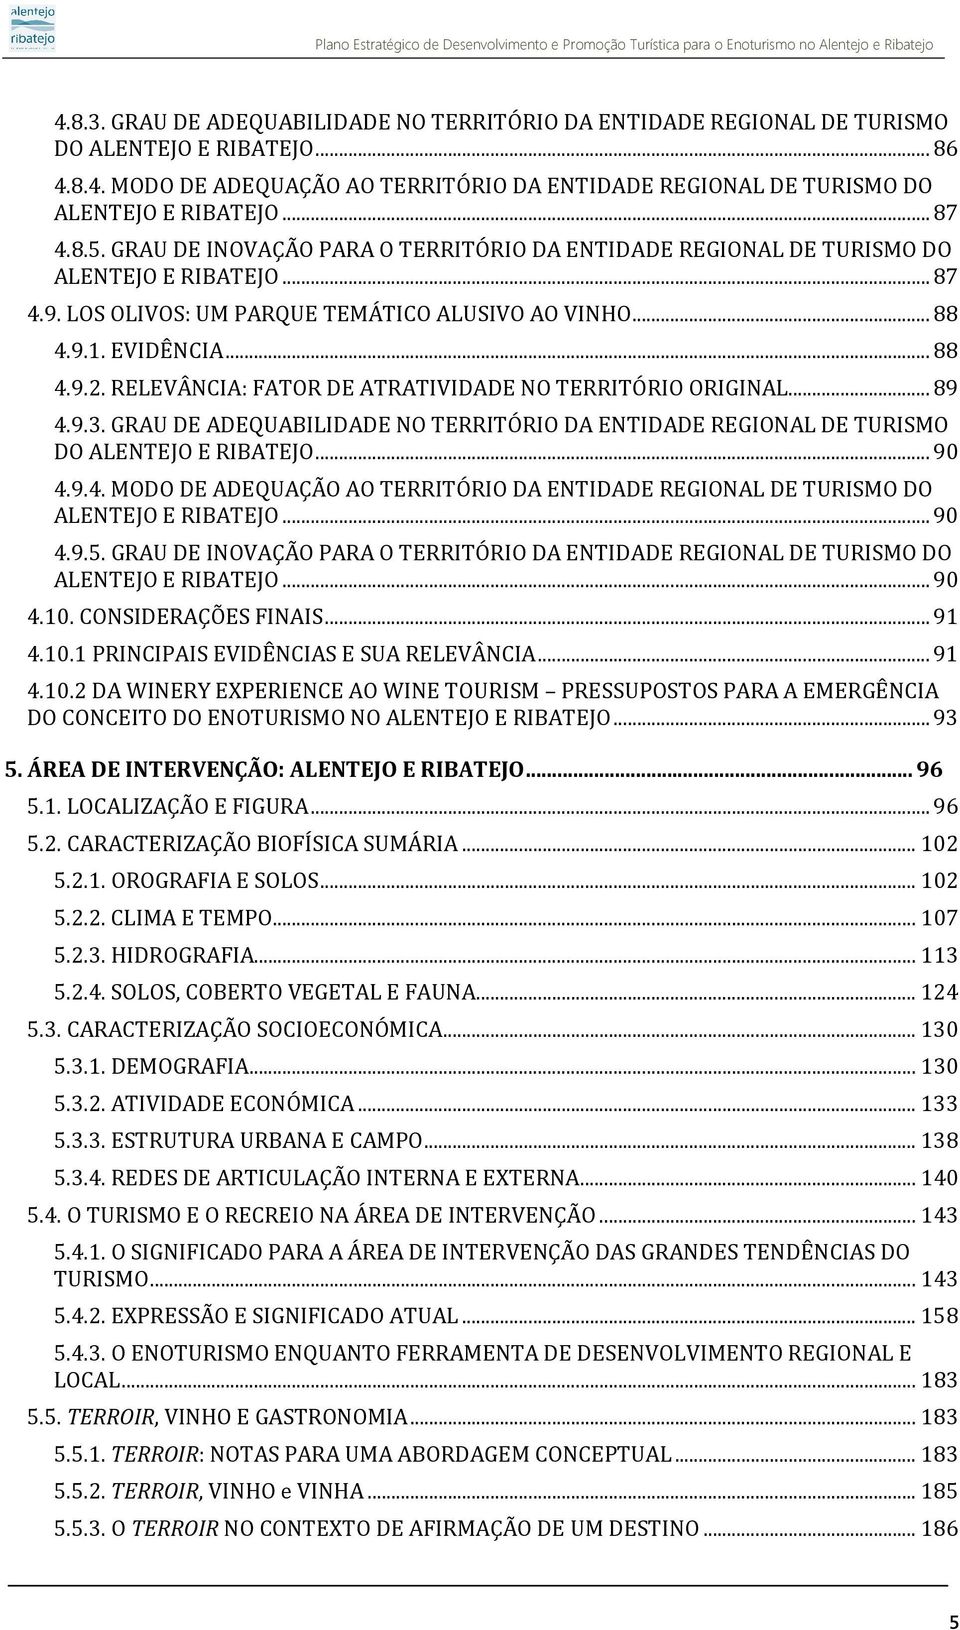 RELEVÂNCIA: FATOR DE ATRATIVIDADE NO TERRITÓRIO ORIGINAL... 89 4.9.3. GRAU DE ADEQUABILIDADE NO TERRITÓRIO DA ENTIDADE REGIONAL DE TURISMO DO ALENTEJO E RIBATEJO... 90 4.9.4. MODO DE ADEQUAÇÃO AO TERRITÓRIO DA ENTIDADE REGIONAL DE TURISMO DO ALENTEJO E RIBATEJO.